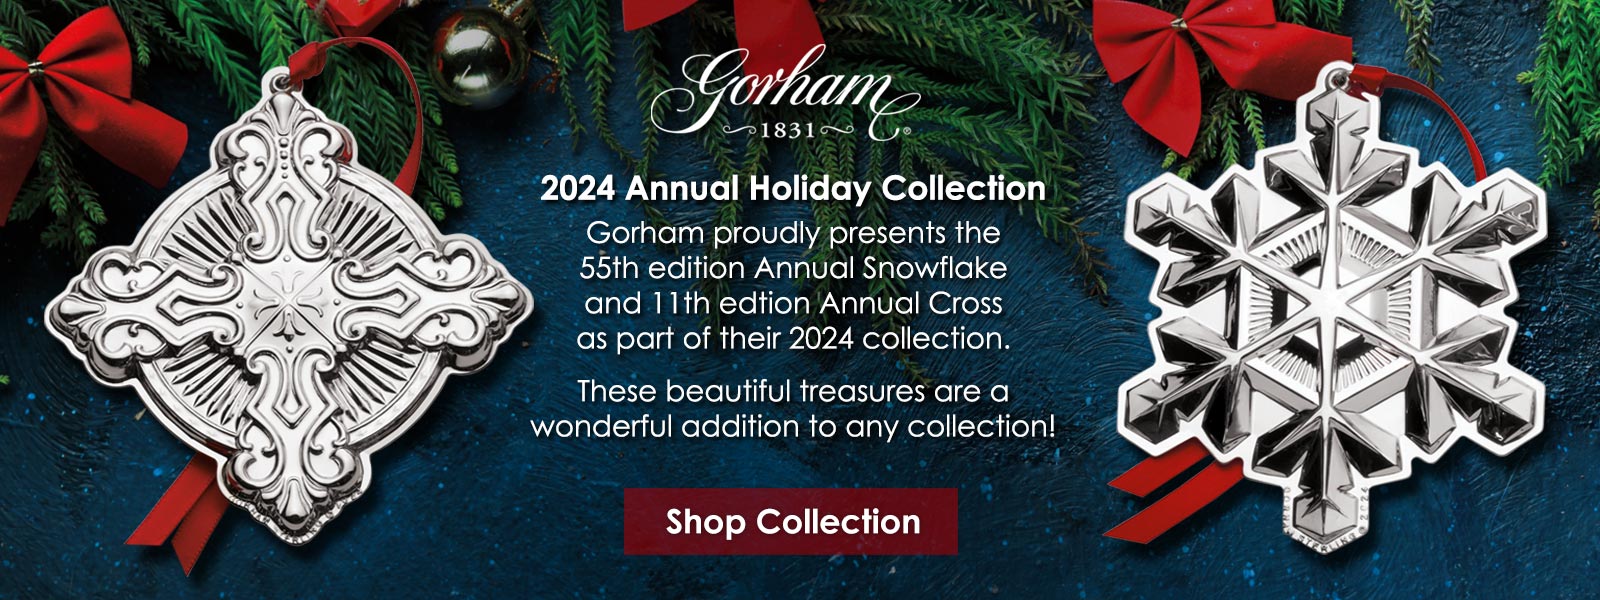 2024 Gorham Collection